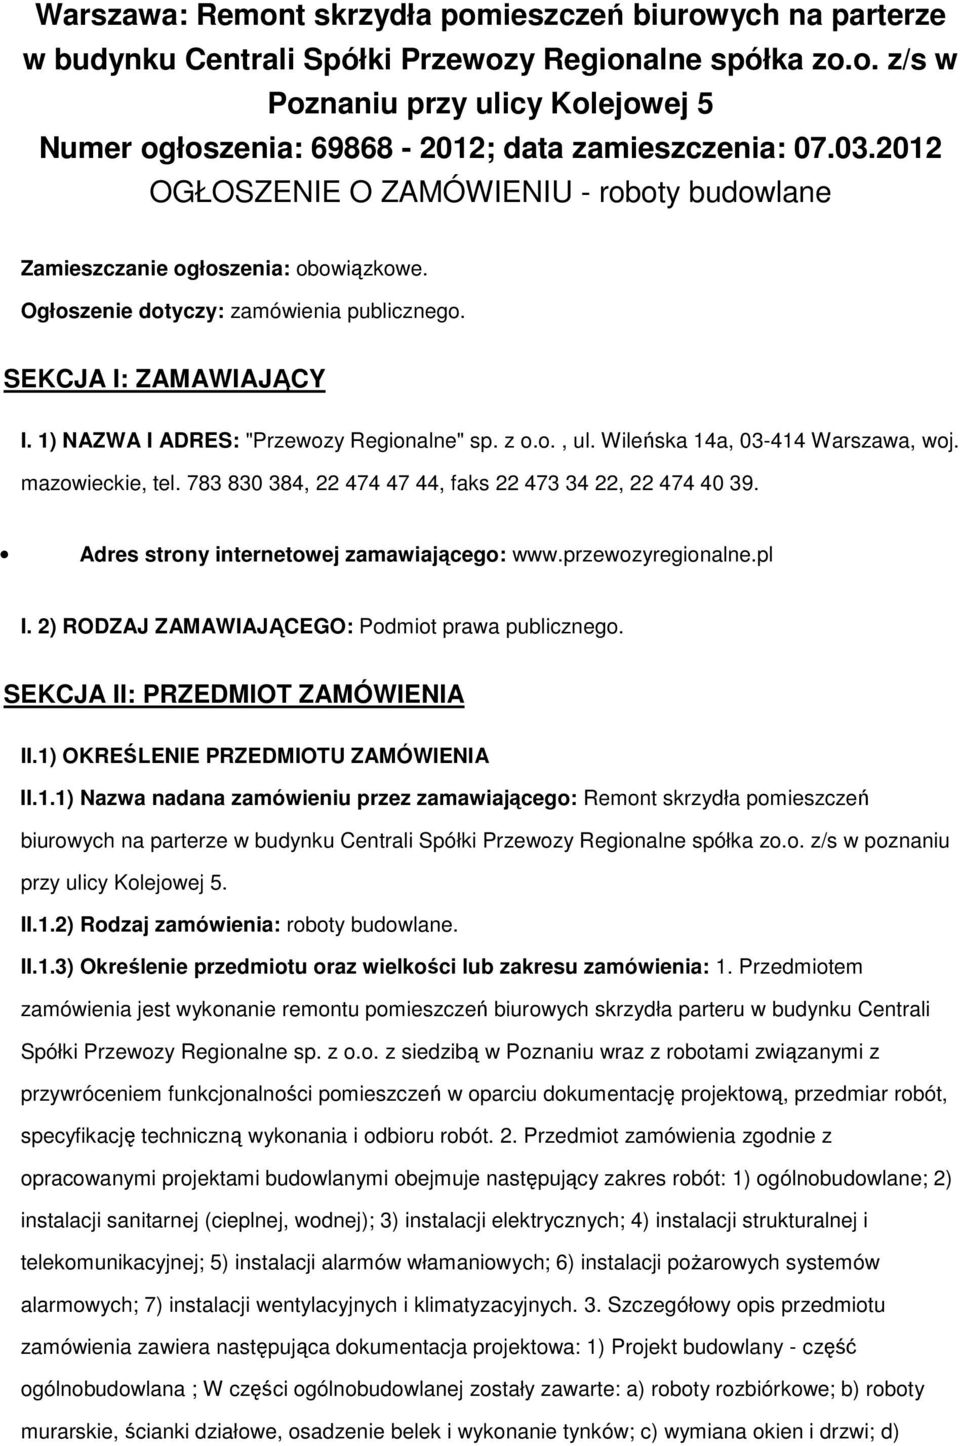 1) NAZWA I ADRES: "Przewozy Regionalne" sp. z o.o., ul. Wileńska 14a, 03-414 Warszawa, woj. mazowieckie, tel. 783 830 384, 22 474 47 44, faks 22 473 34 22, 22 474 40 39.